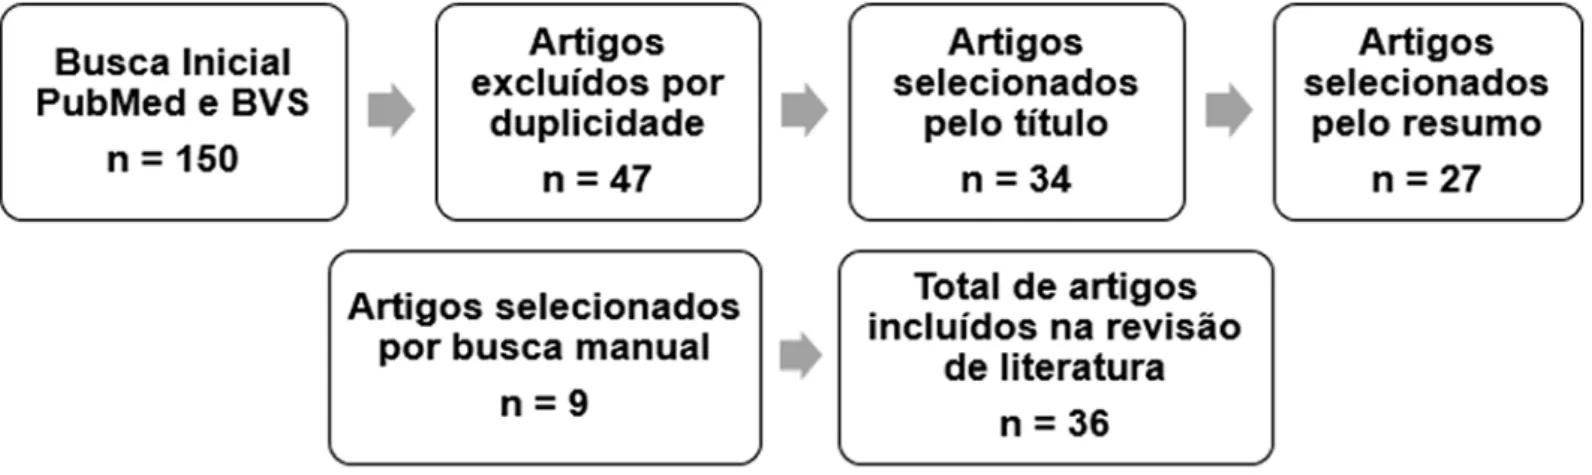 Figura 1. Fluxograma com a seleção dos artigos para compor a revisão de literatura